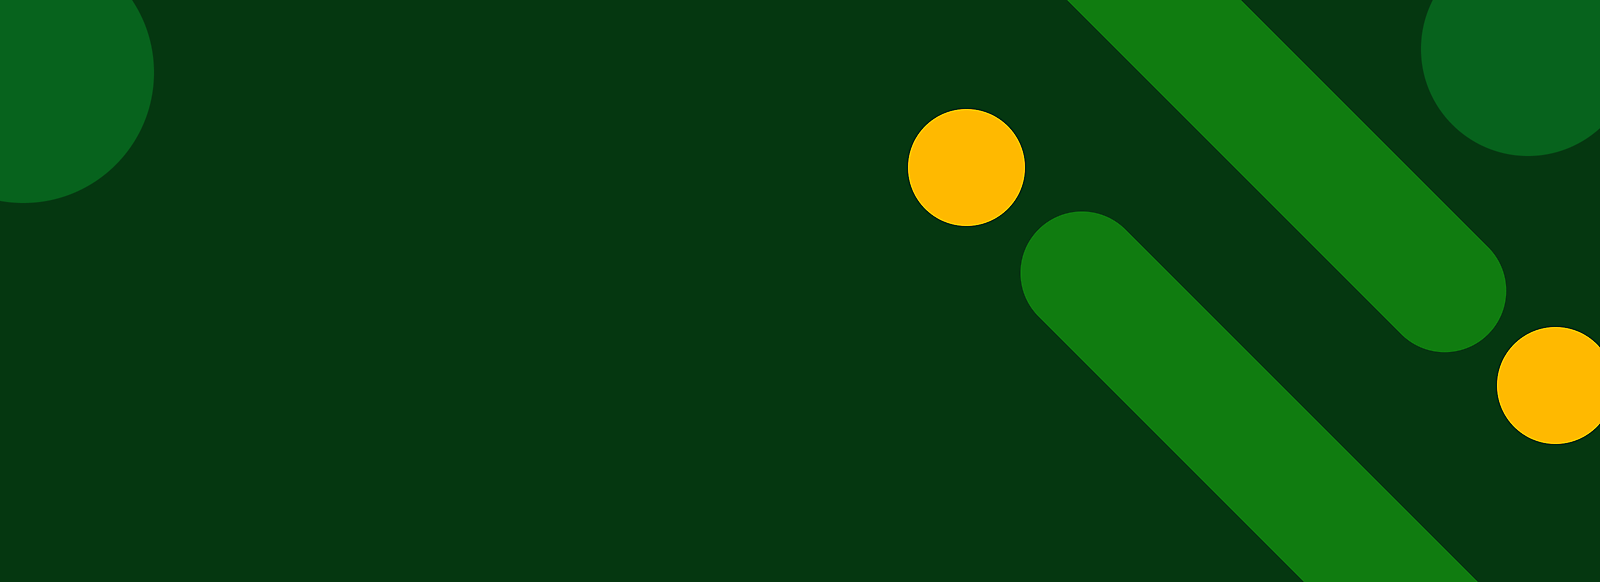 Abstrakter grüner Hintergrund mit gelben Punkten und diagonalen grünen Streifen.